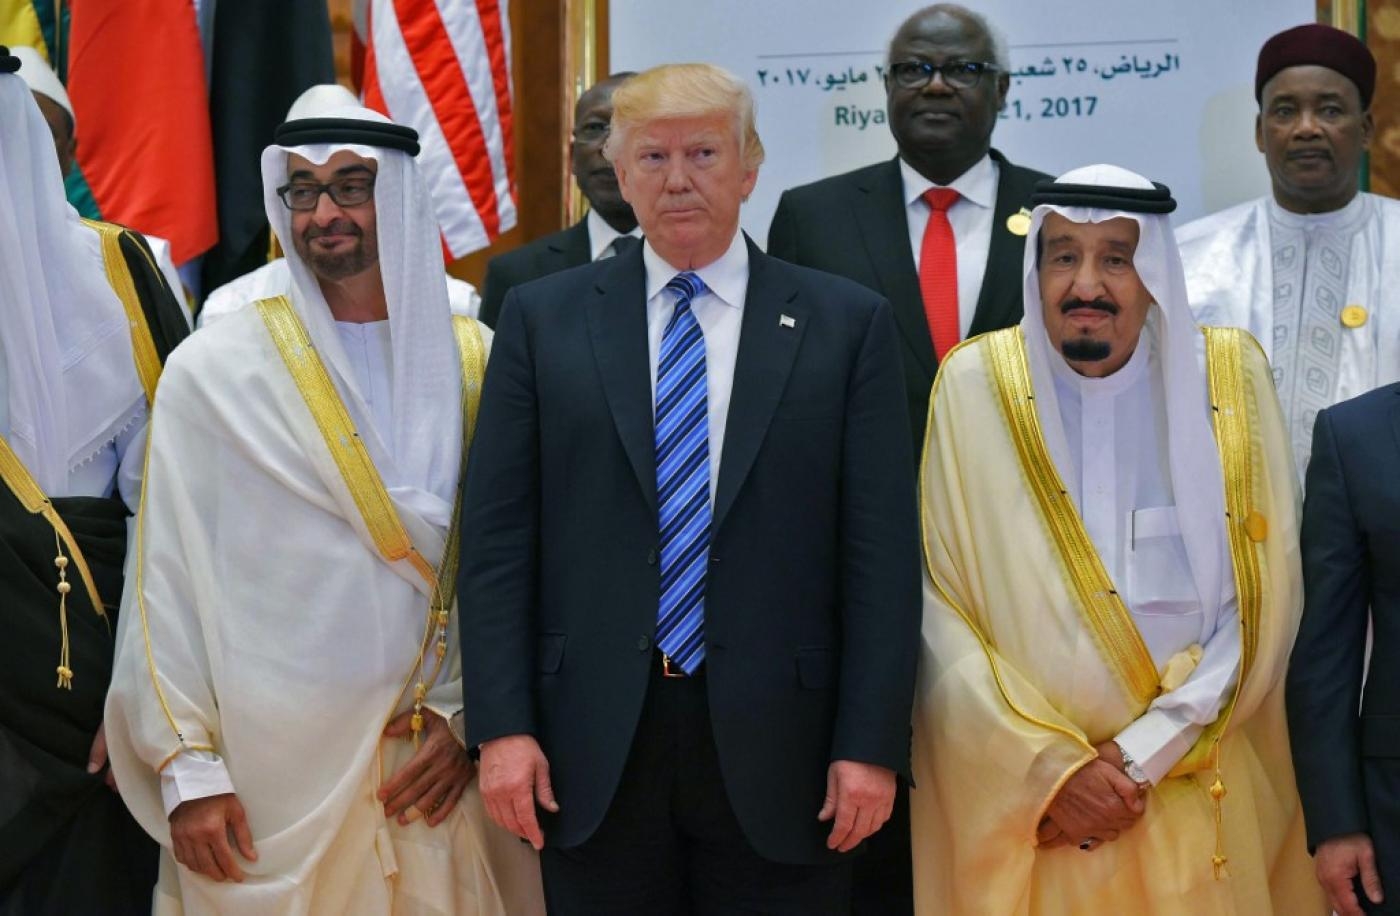 Le président américain Donald Trump, le roi Salmane ben Abdelaziz al-Saoud et le prince héritier d’Abou Dabi Mohammed ben Zayed al-Nahyane (à gauche) posent pour une photo de groupe à l’occasion du sommet arabo-islamo-américain à Riyad, le 21 mai 2017 (AFP)